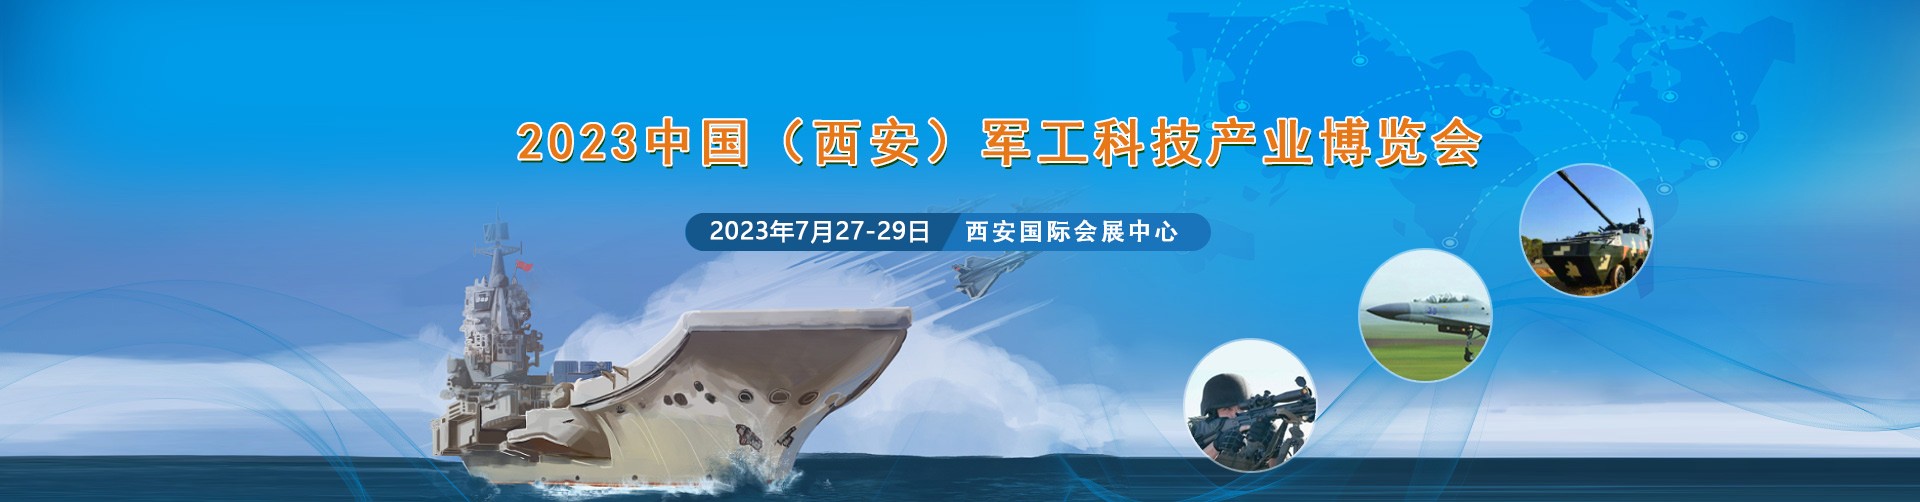  8868体育参加中国(西安) 军工科技产业博览会